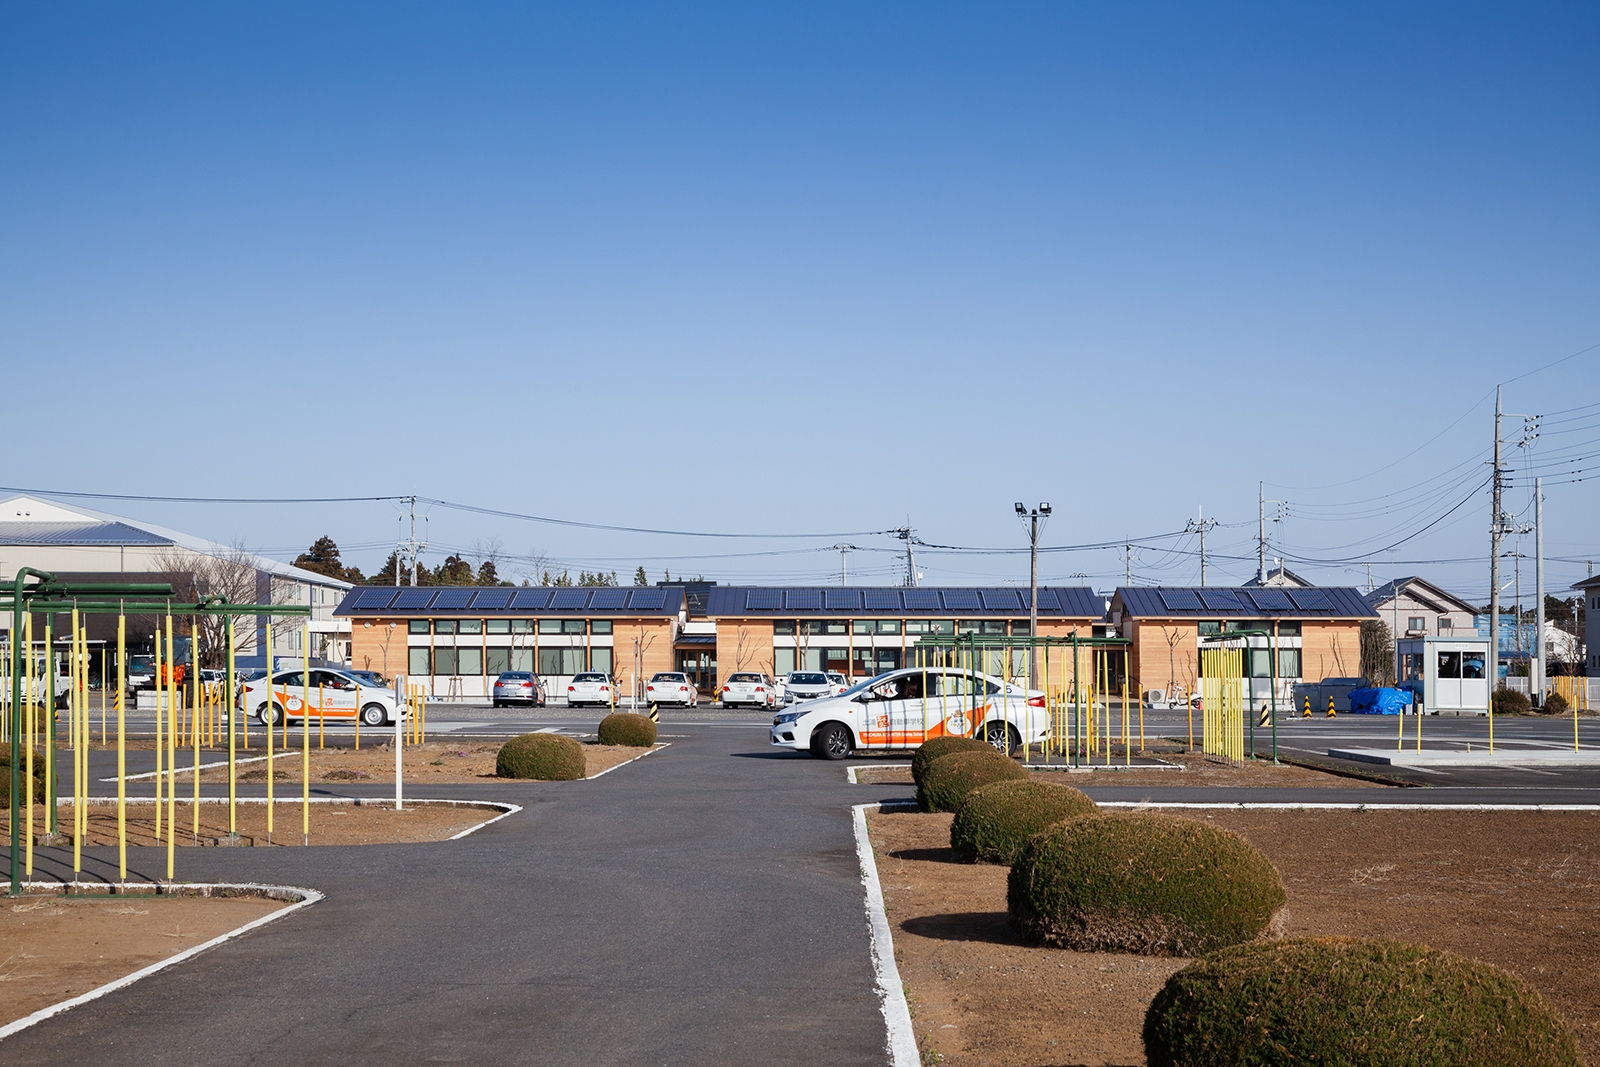  運転練習場越しに見る「土浦北インター自動車学校 校舎棟」の西側外観。手前に並ぶ3棟の屋根上に太陽光発電パネルを載せている（写真：吉田 誠）